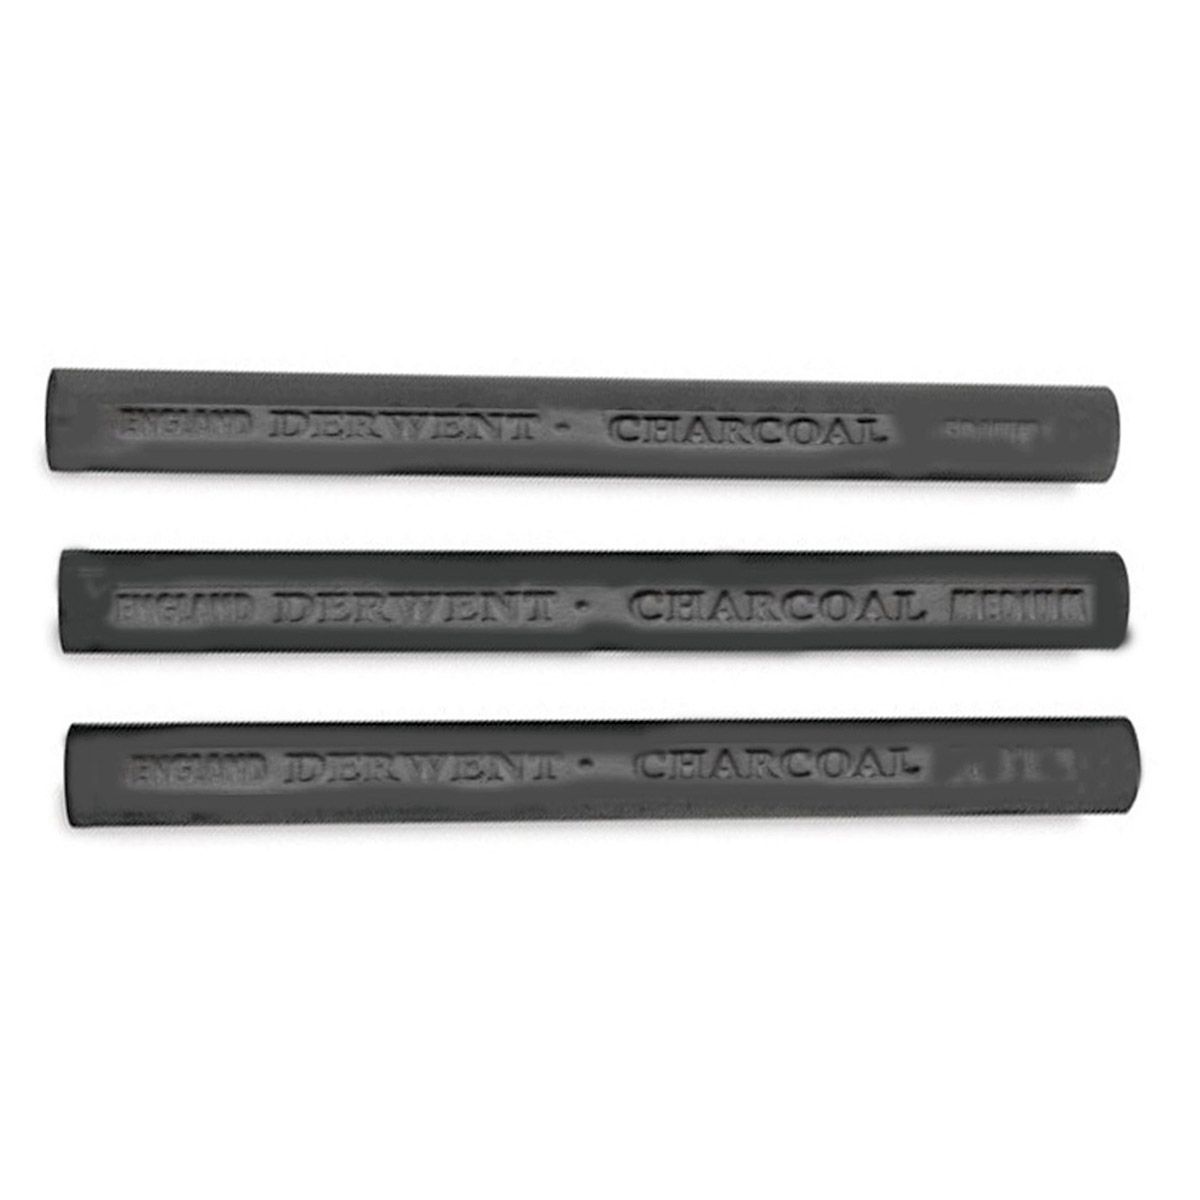 Derwent Compressed Charcoal Round Sticks